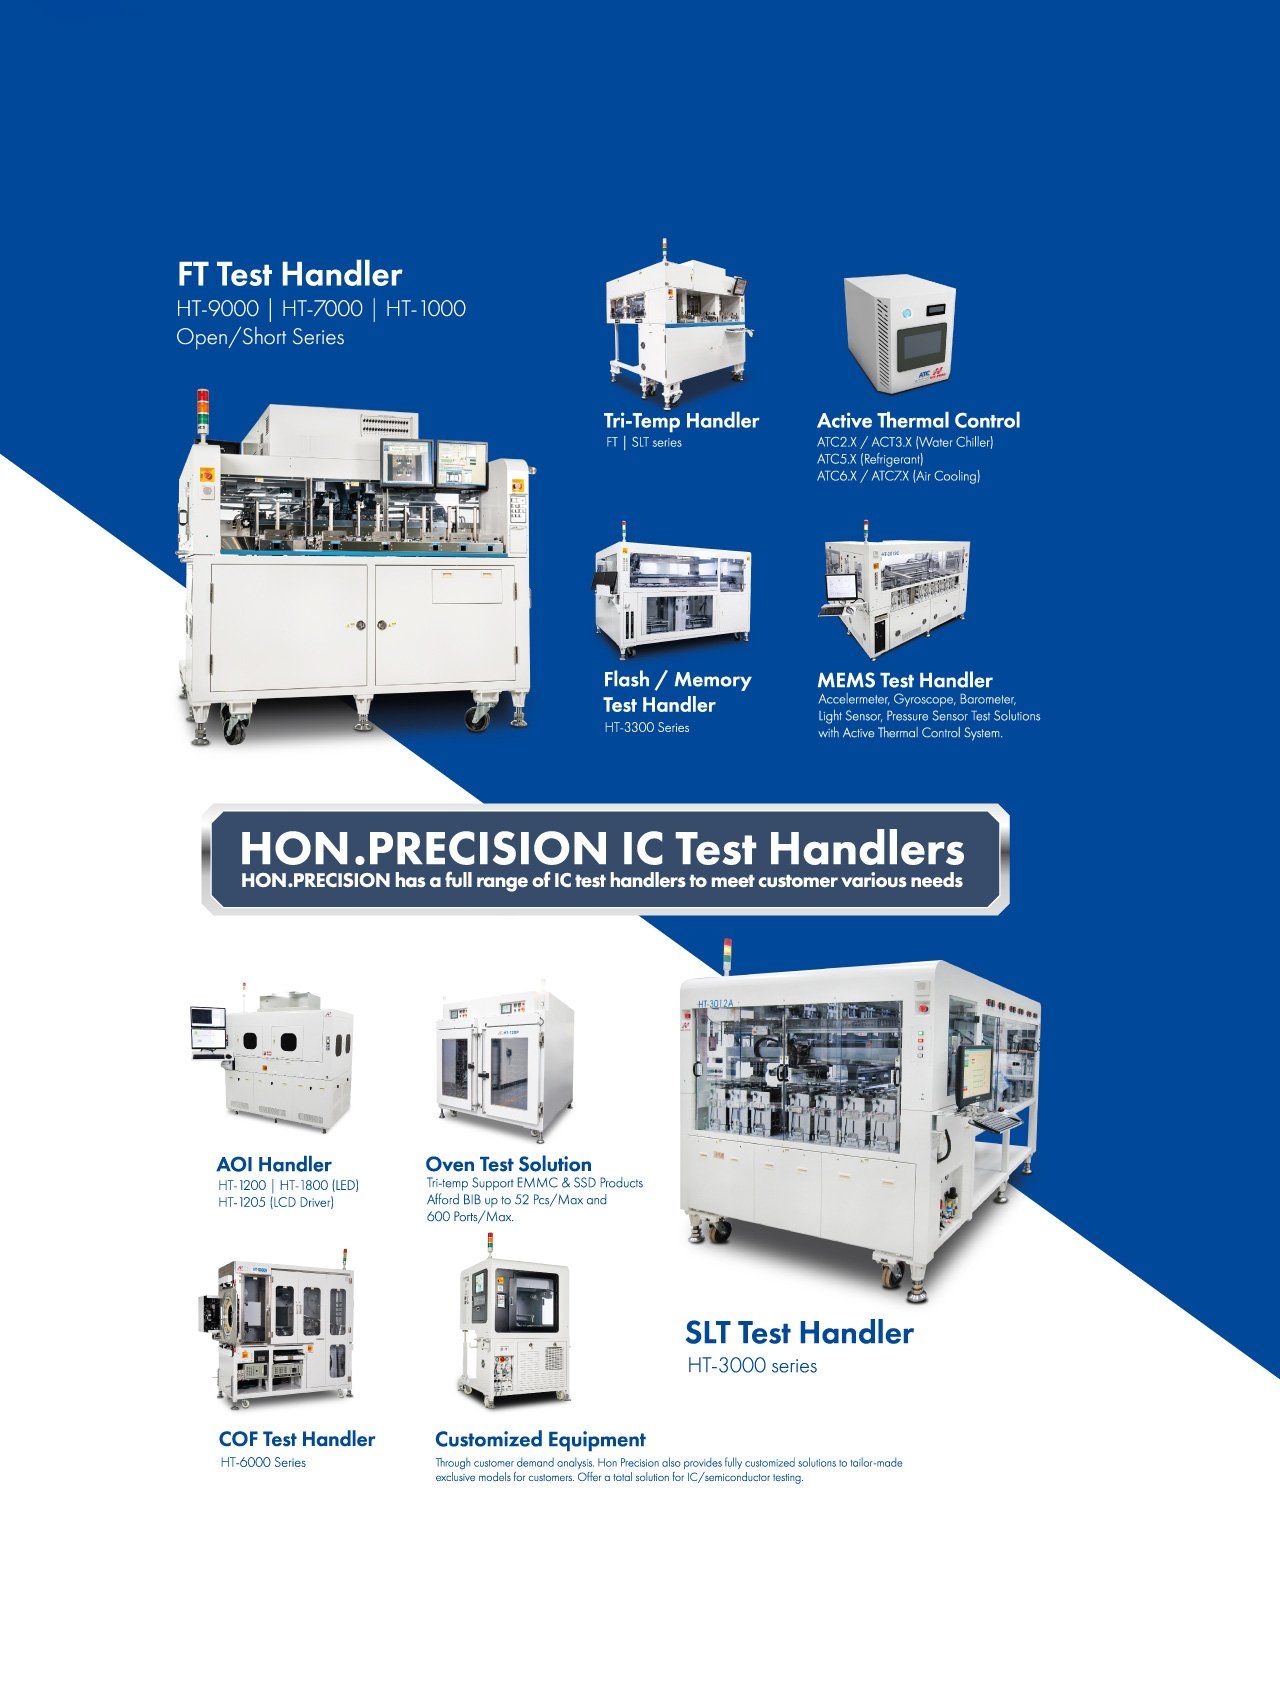 HONPrec Product Portfolio